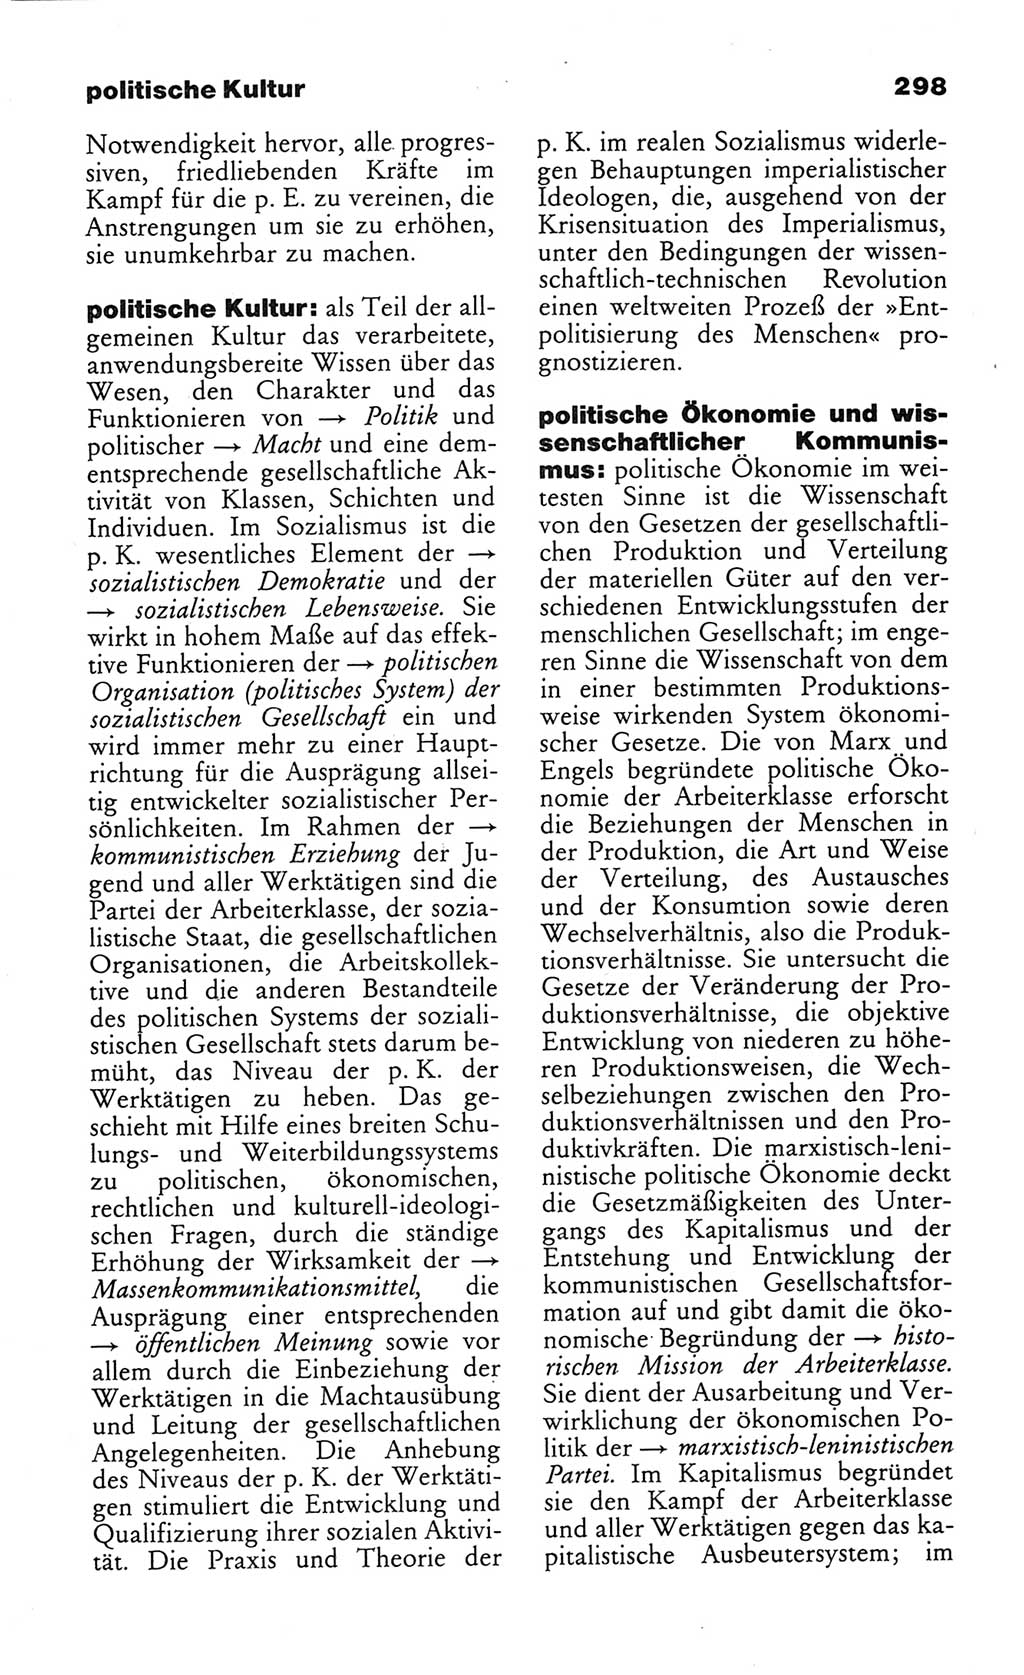 Wörterbuch des wissenschaftlichen Kommunismus [Deutsche Demokratische Republik (DDR)] 1982, Seite 298 (Wb. wiss. Komm. DDR 1982, S. 298)